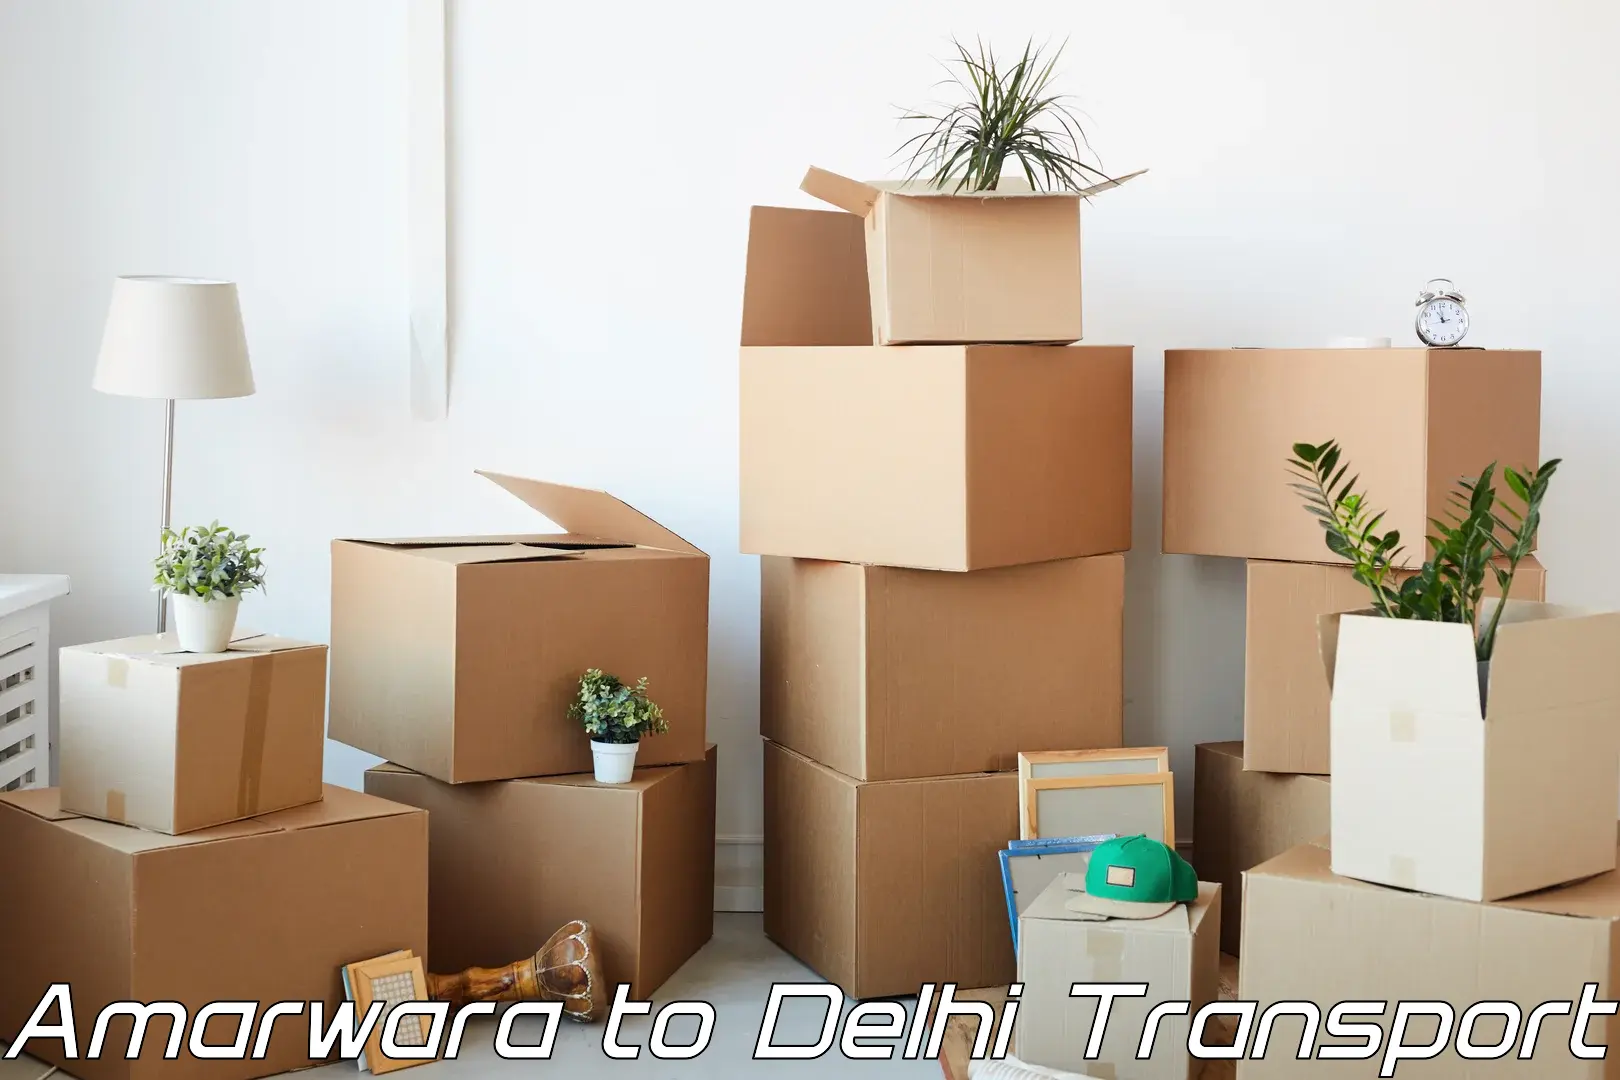 Container transport service Amarwara to Delhi